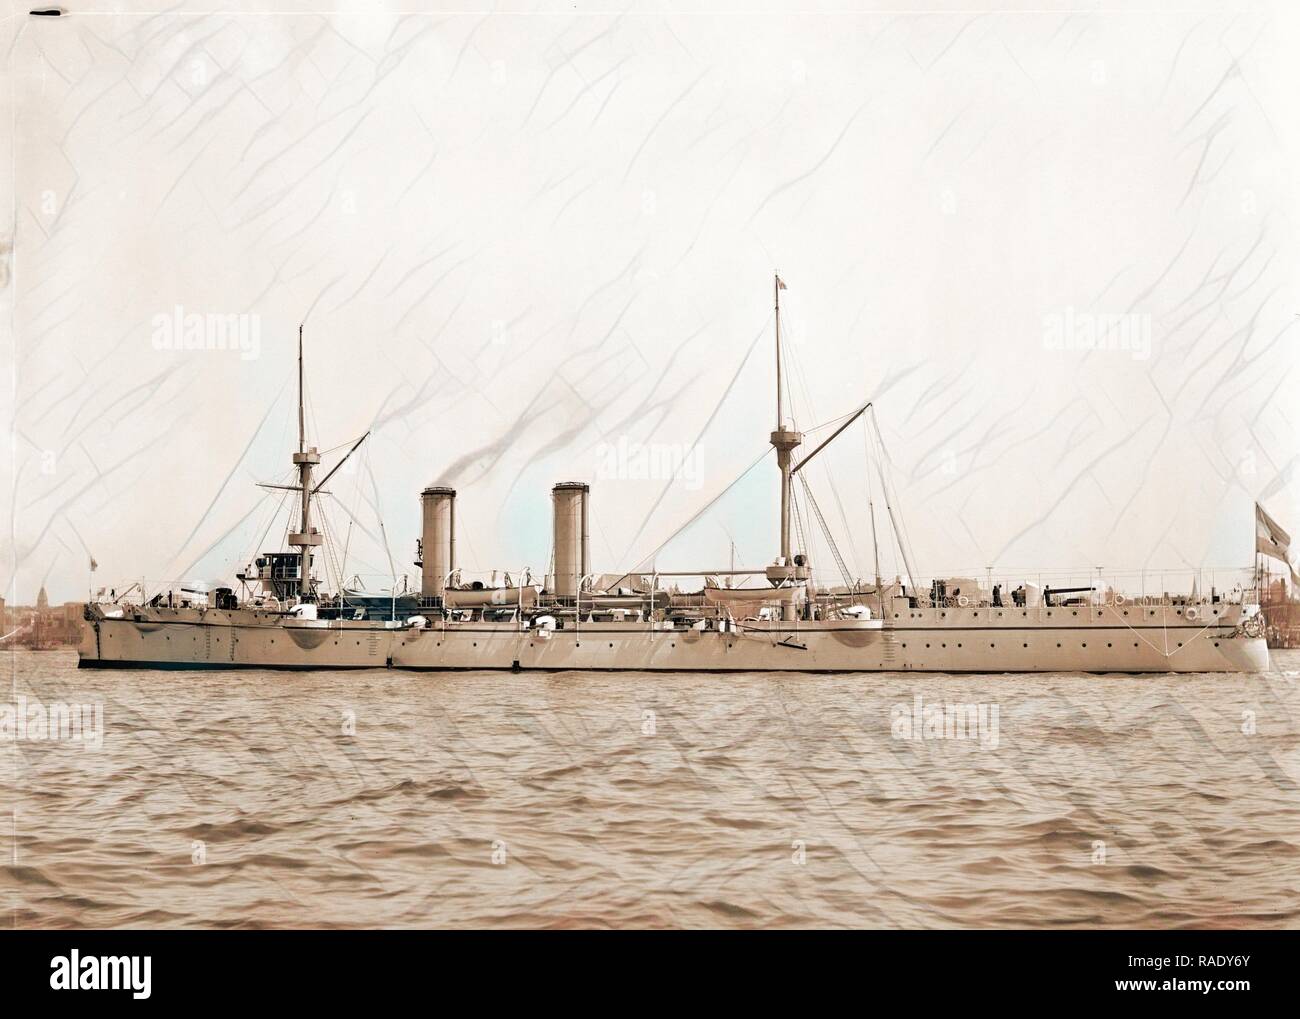 Neuve d.h. Nueve de Julio, argentinische Schiff, Nueve de Julio (Schiff), staatliche Schiffe, argentinische, 188. Neuerfundene Stockfoto